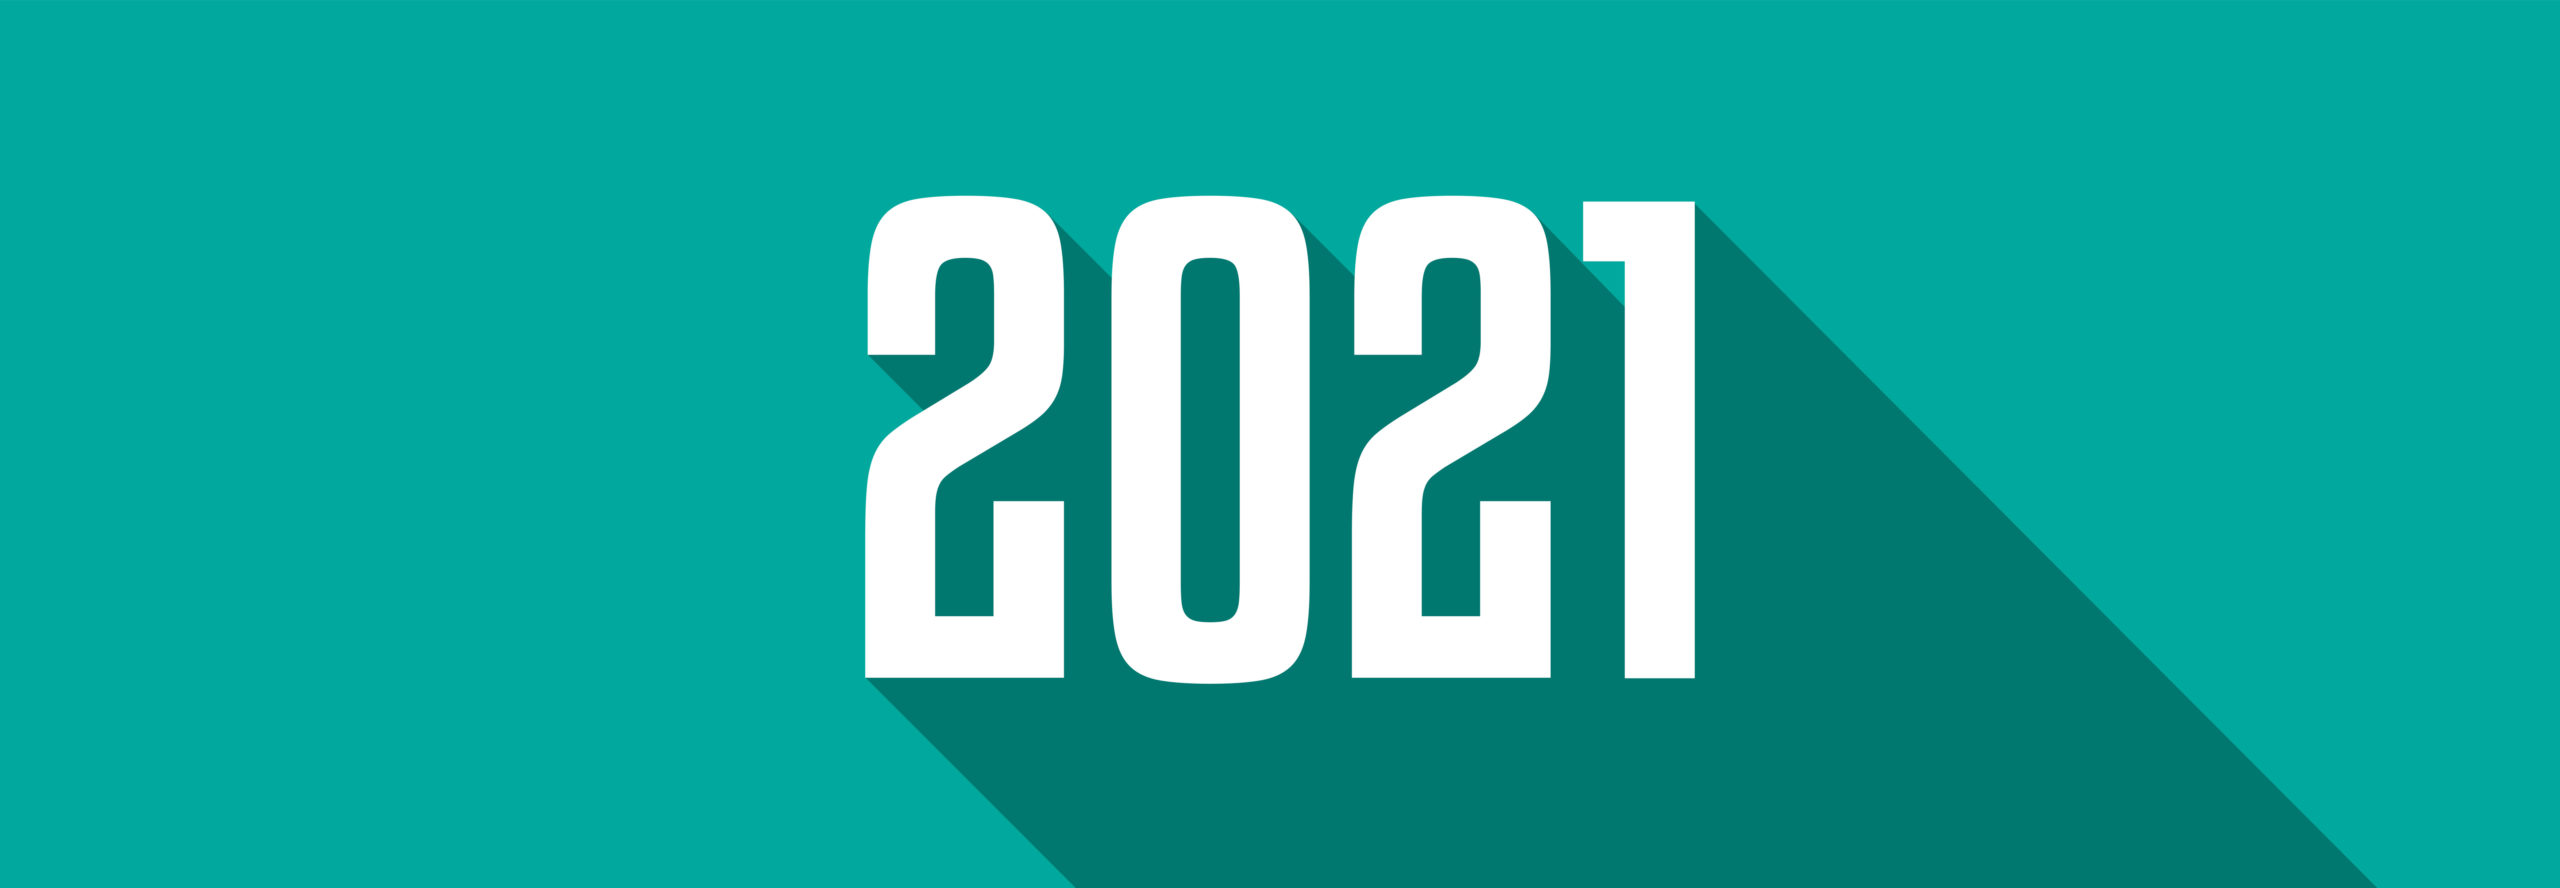 Best of 2021 Blogs